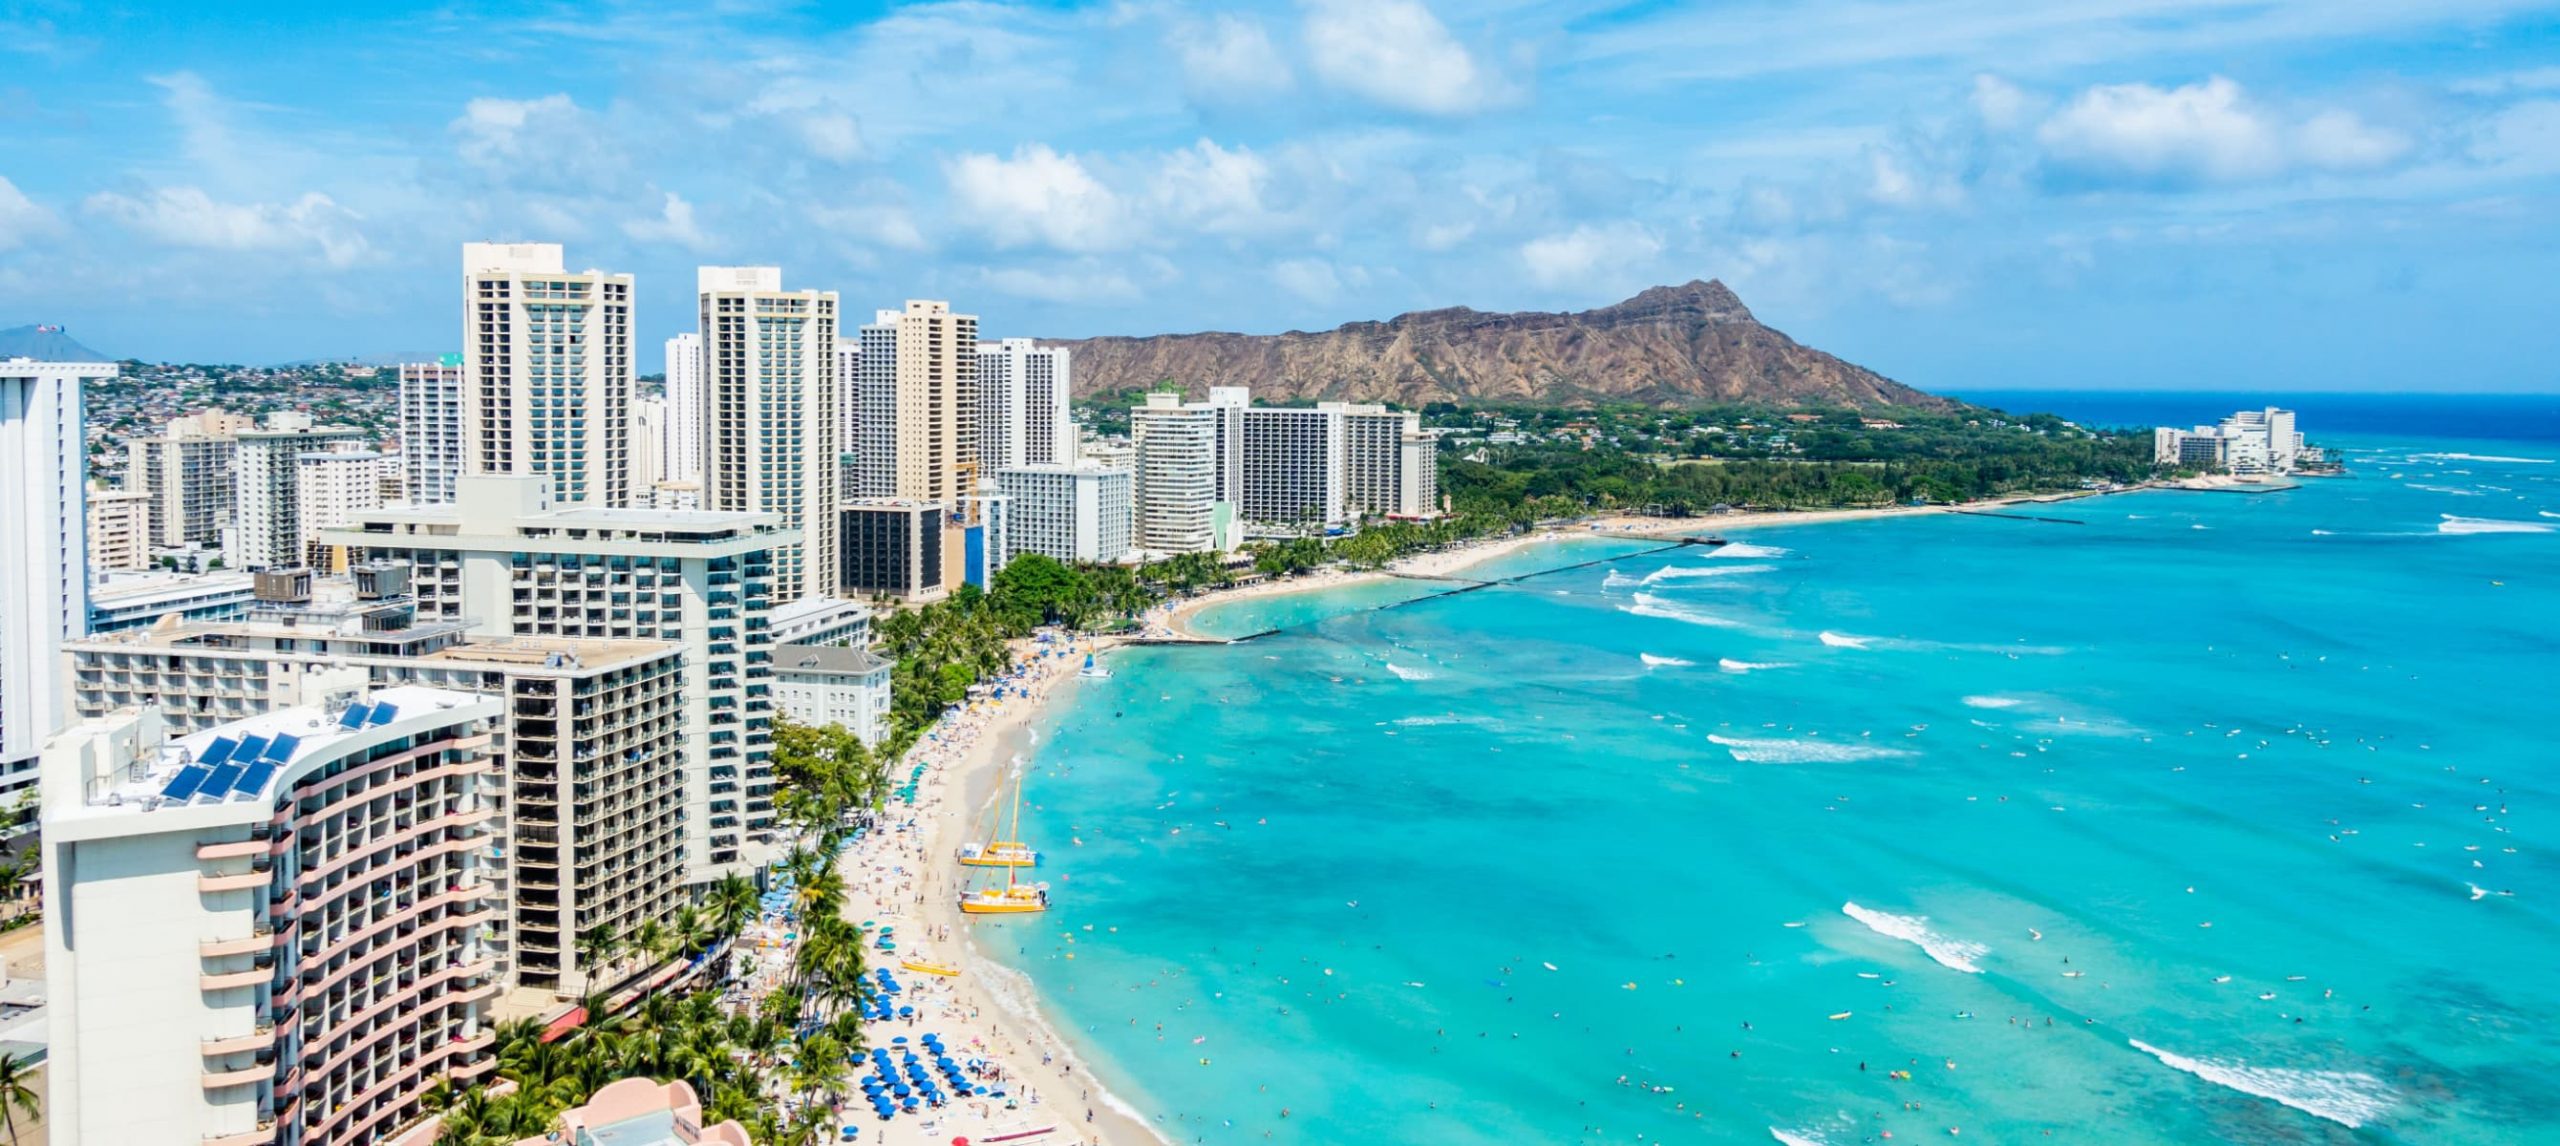 The 5 Best Hotels In Honolulu, Hawaii